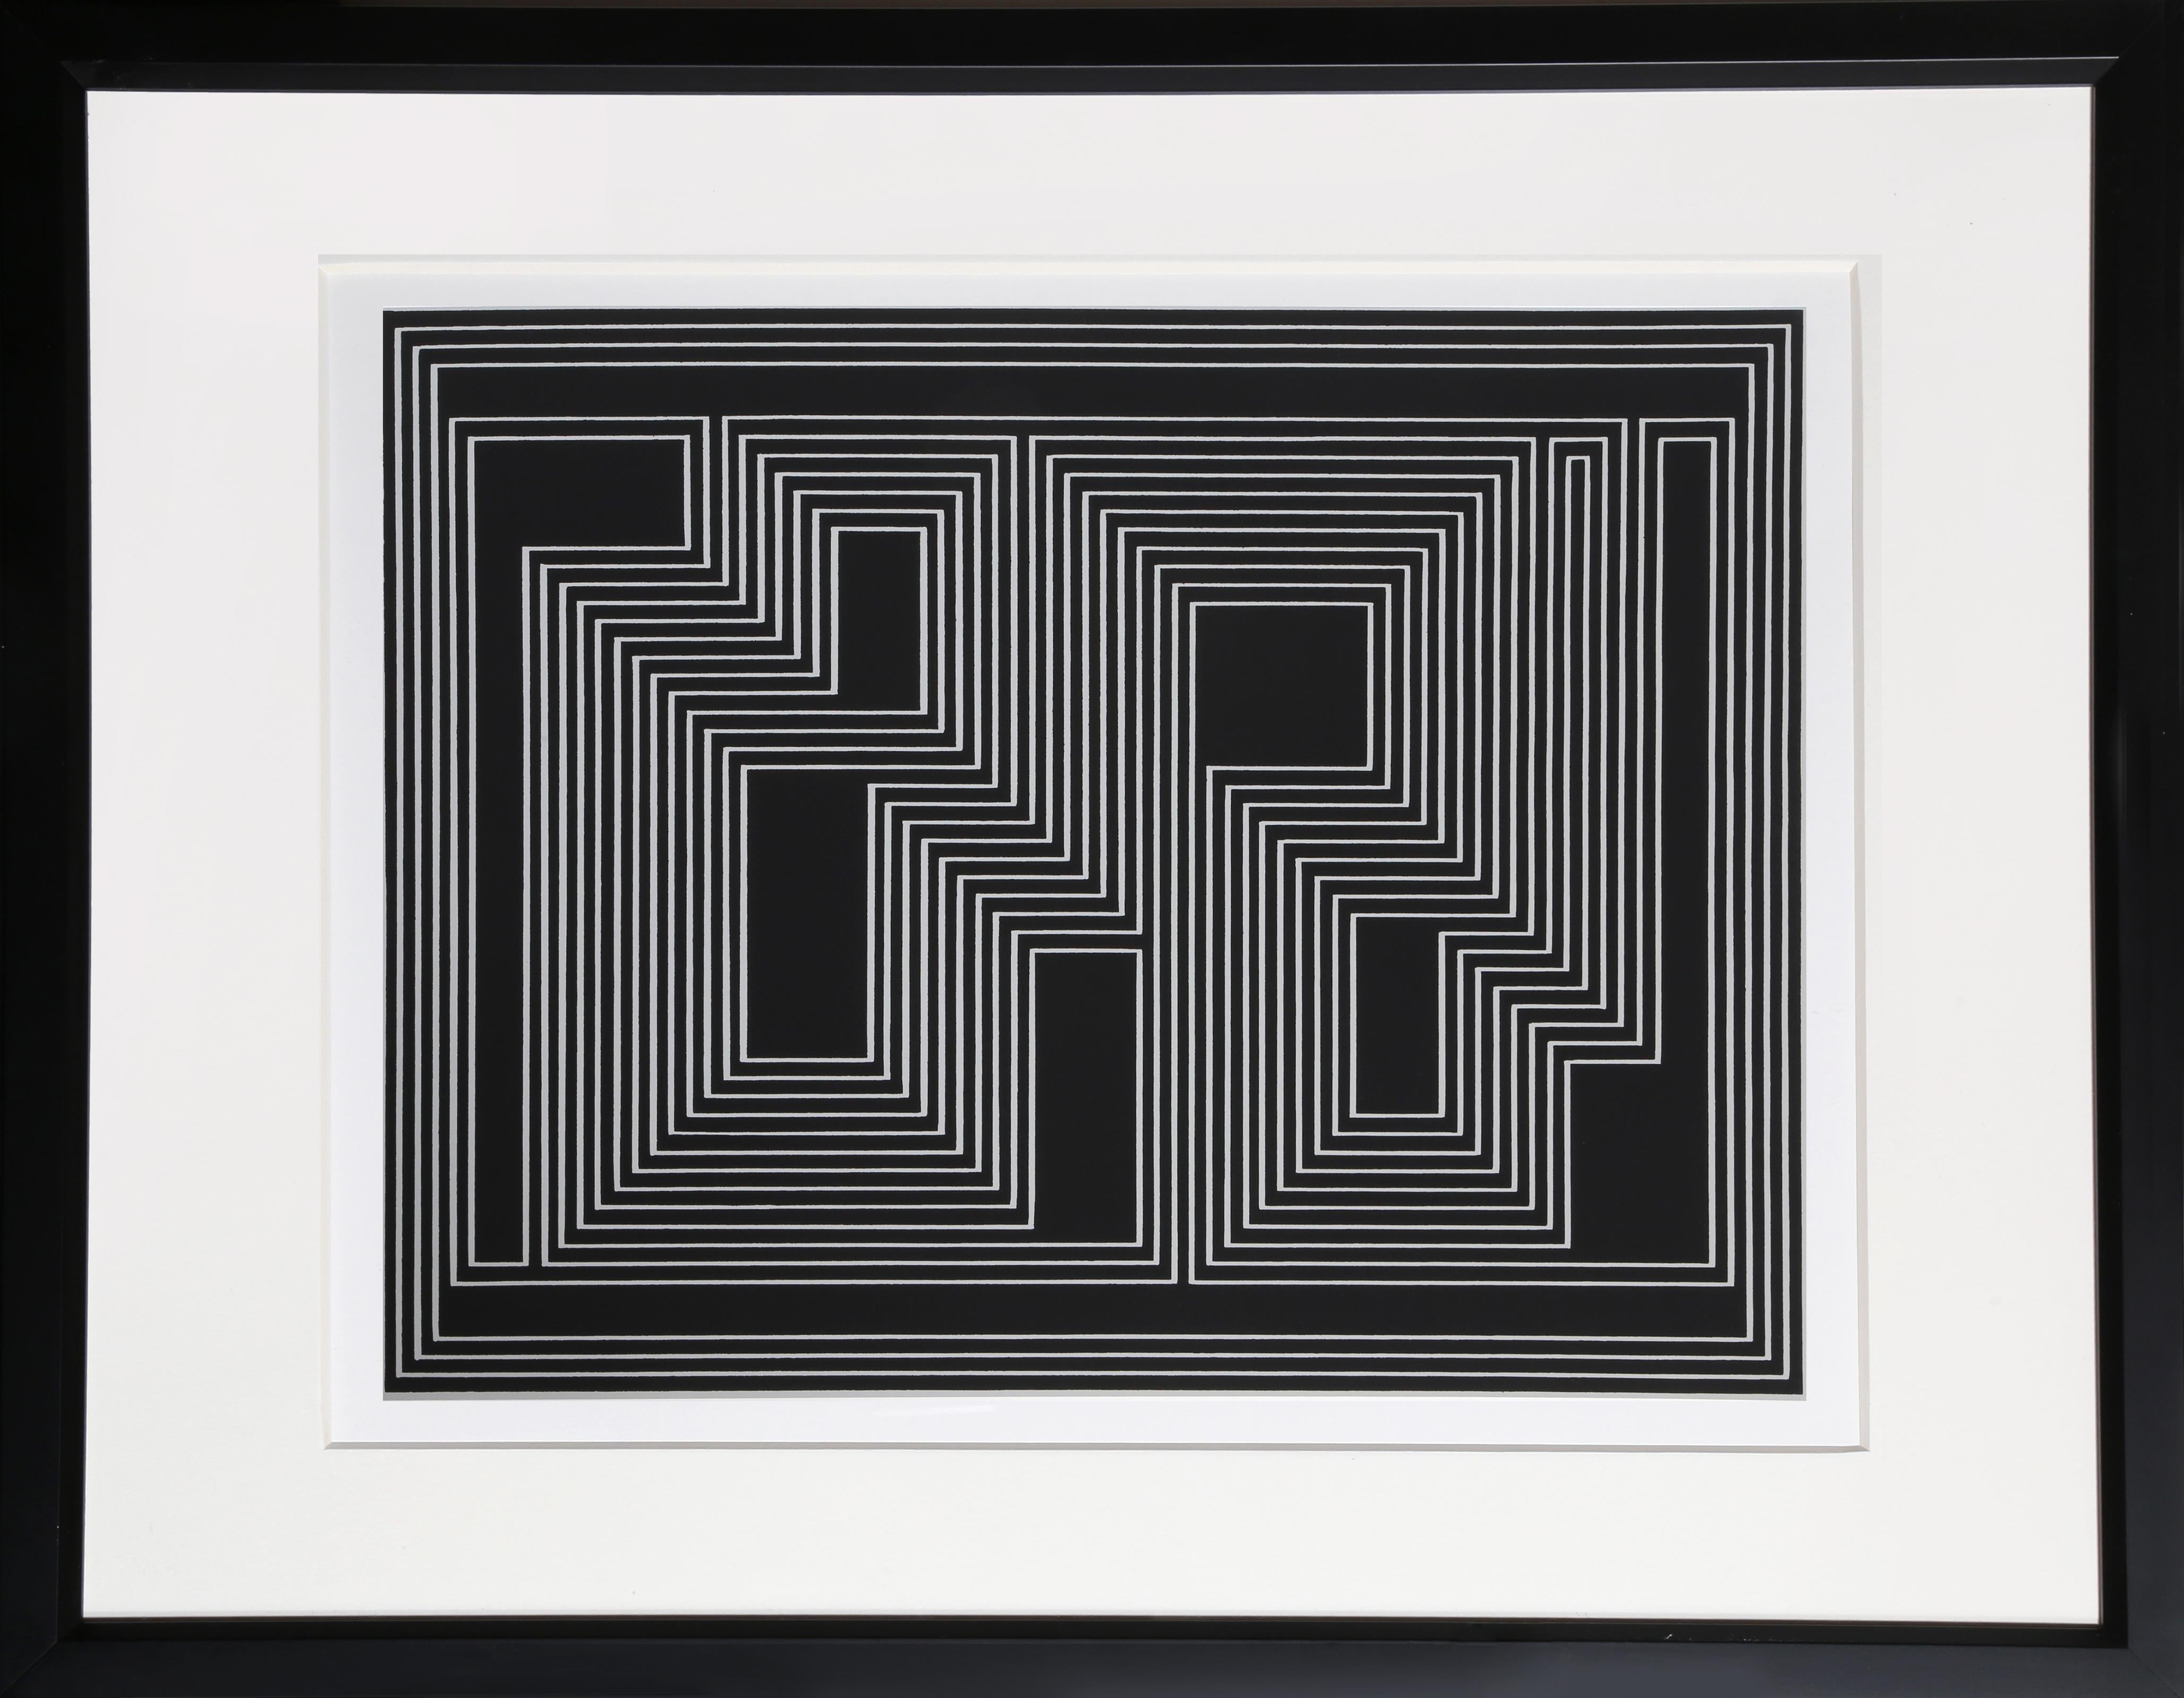 Aus der Mappe "Formulierung: Articulation" von Josef Albers aus dem Jahr 1972. Diese monumentale Serie besteht aus 127 Originalserigrafien, die einen endgültigen Überblick über die wichtigsten Farb- und Formtheorien des Künstlers geben.  Eine Kopie